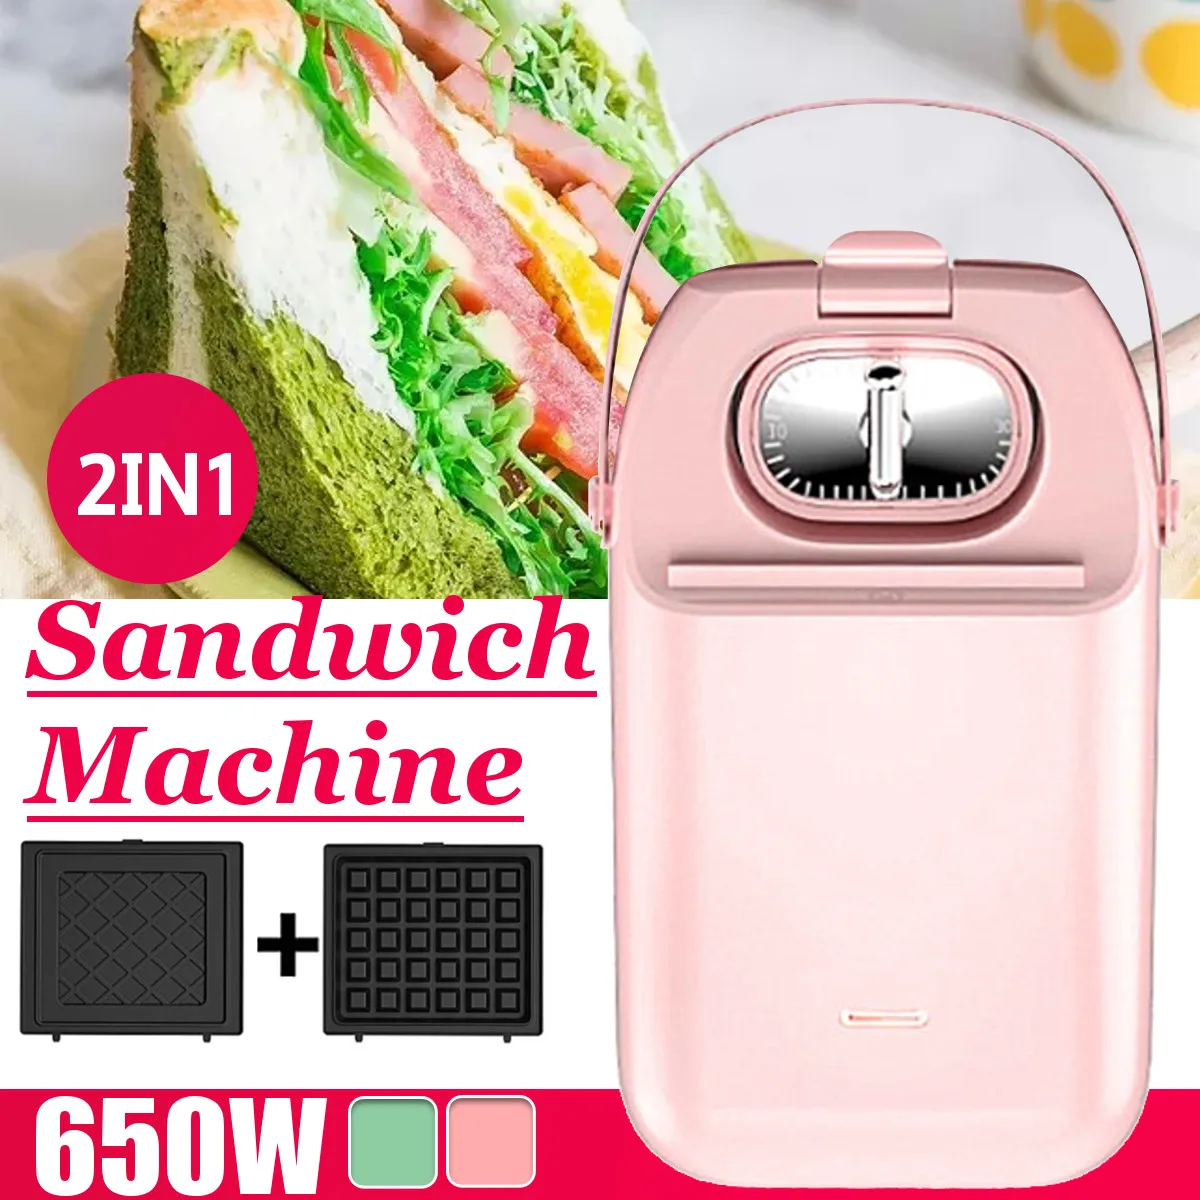 

Электрическая сэндвич-машина Panini 220 В, вафельница, тостер с таймером для выпечки, многофункциональная машина для завтрака, блинчик, запечки